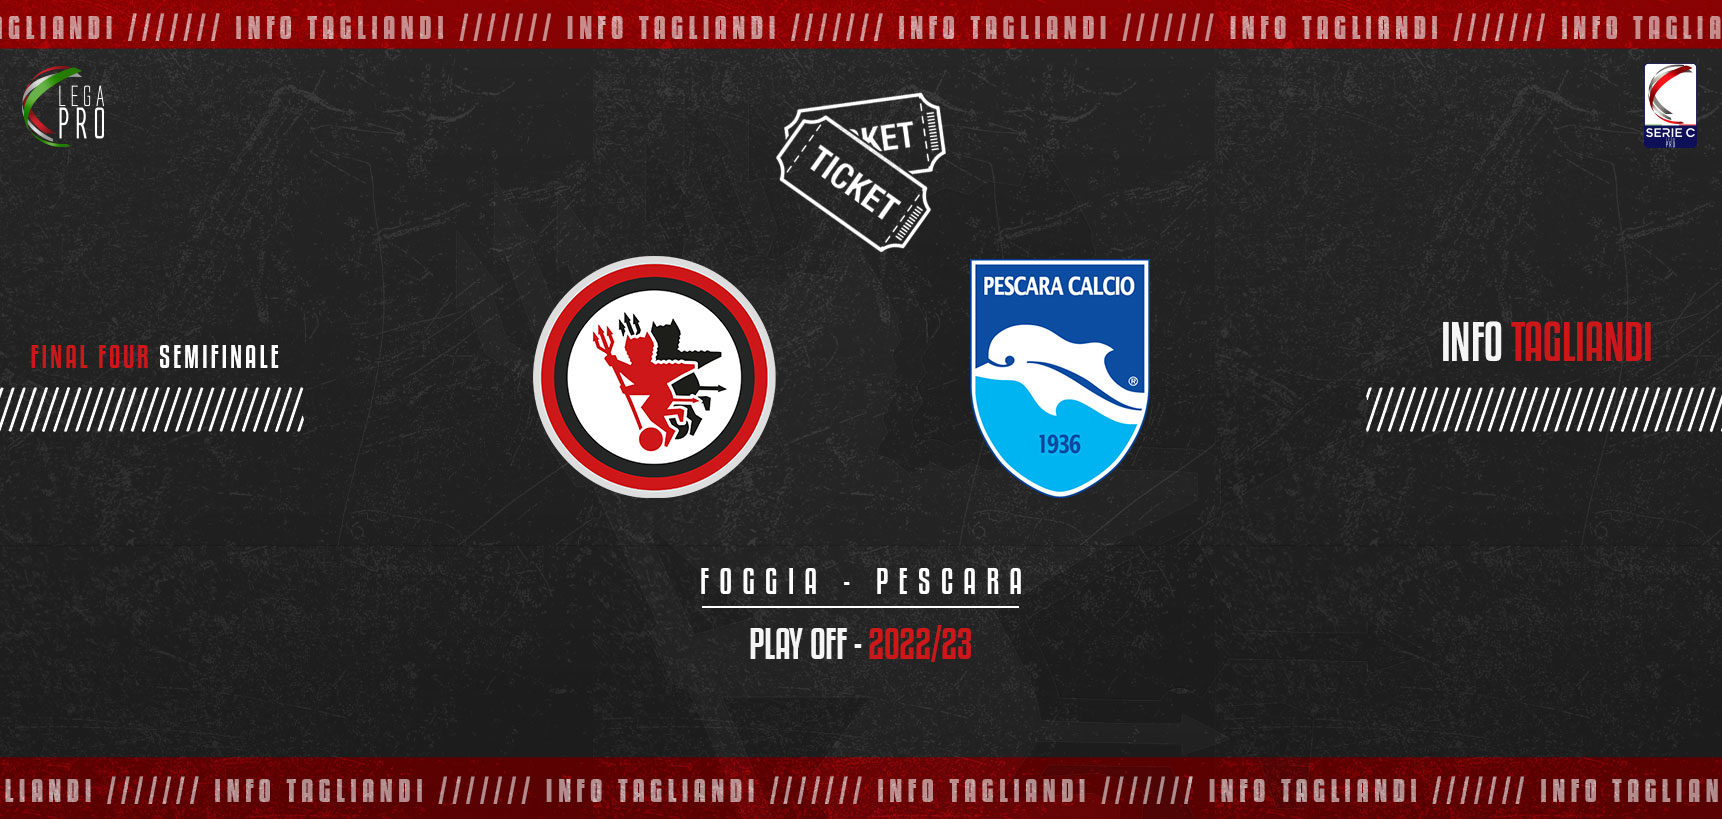 Semifinale Playoff Lega Pro Serie C tra Foggia e Pescara, ecco le informazioni relative ai biglietti disponibili